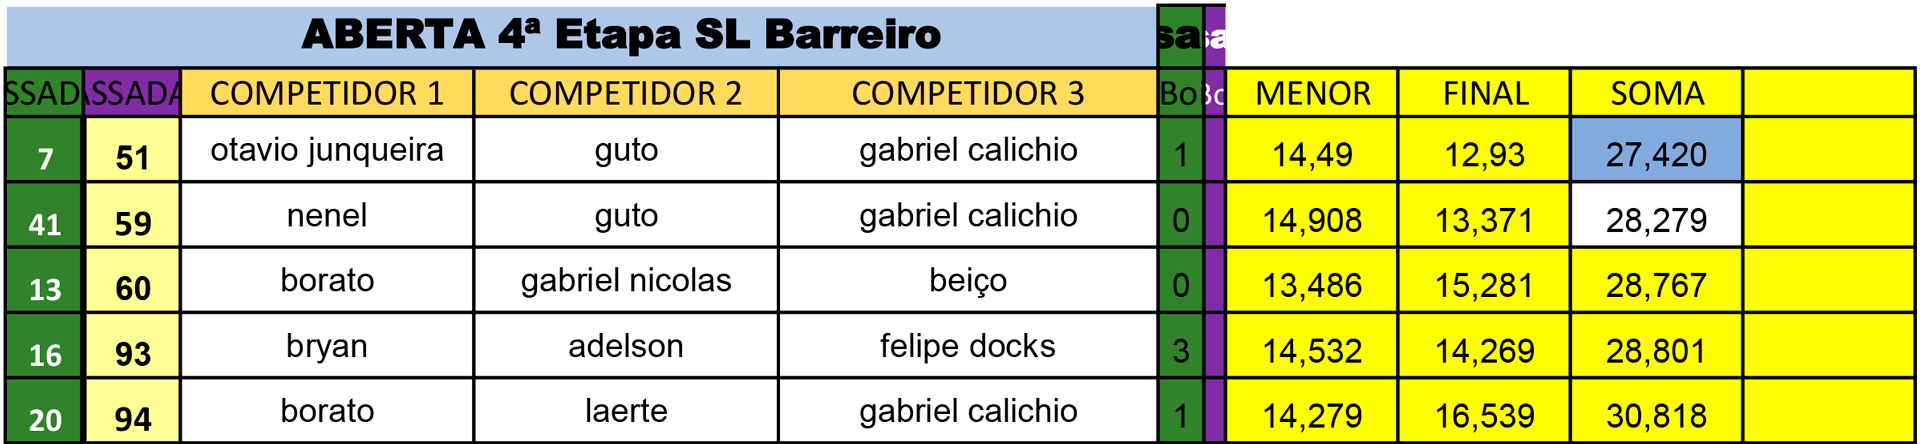 Aberta-Final---4-Etapa-SL-BArreiro-5P